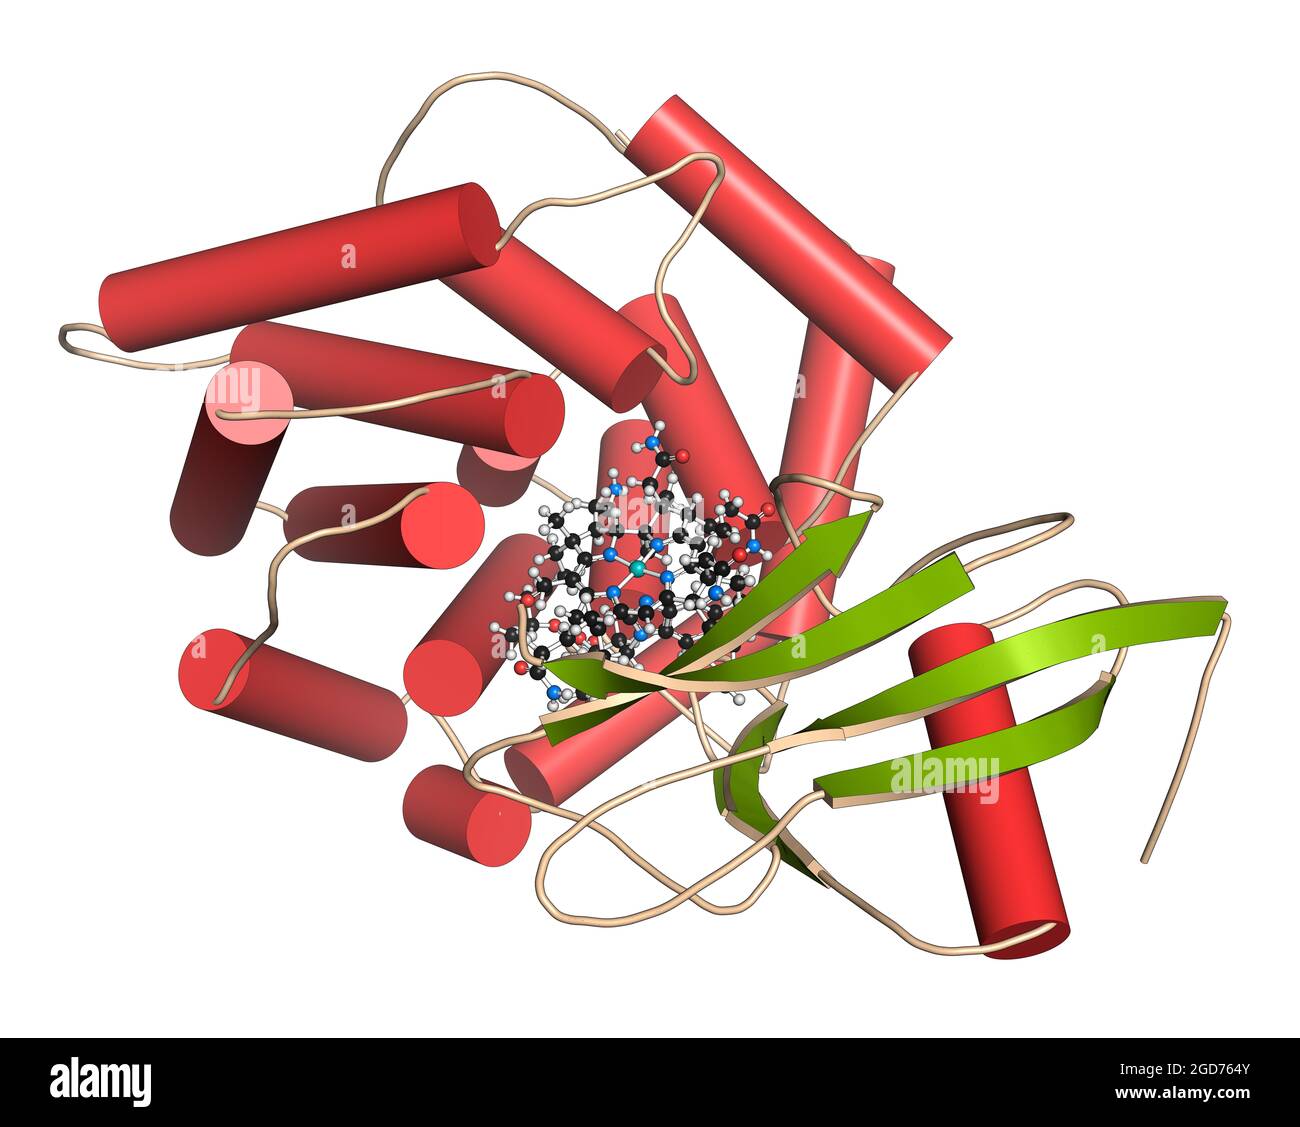 Facteur intrinsèque (IF) protéine. Illustration 3D. Banque D'Images